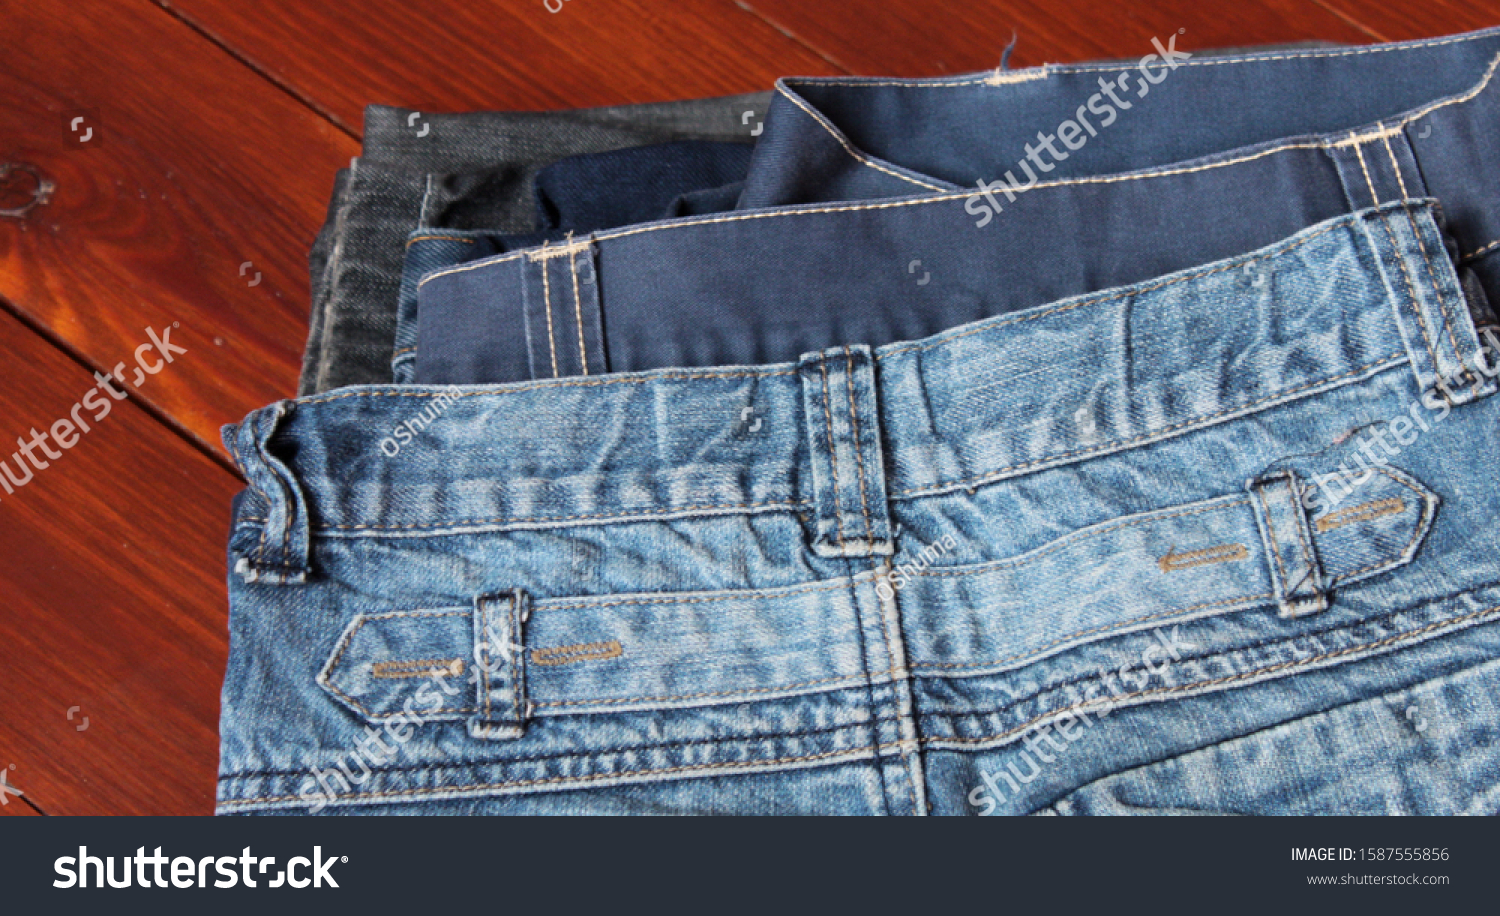 jeans texture. Jeans background. Denim jeans texture or denim jeans background. #1587555856